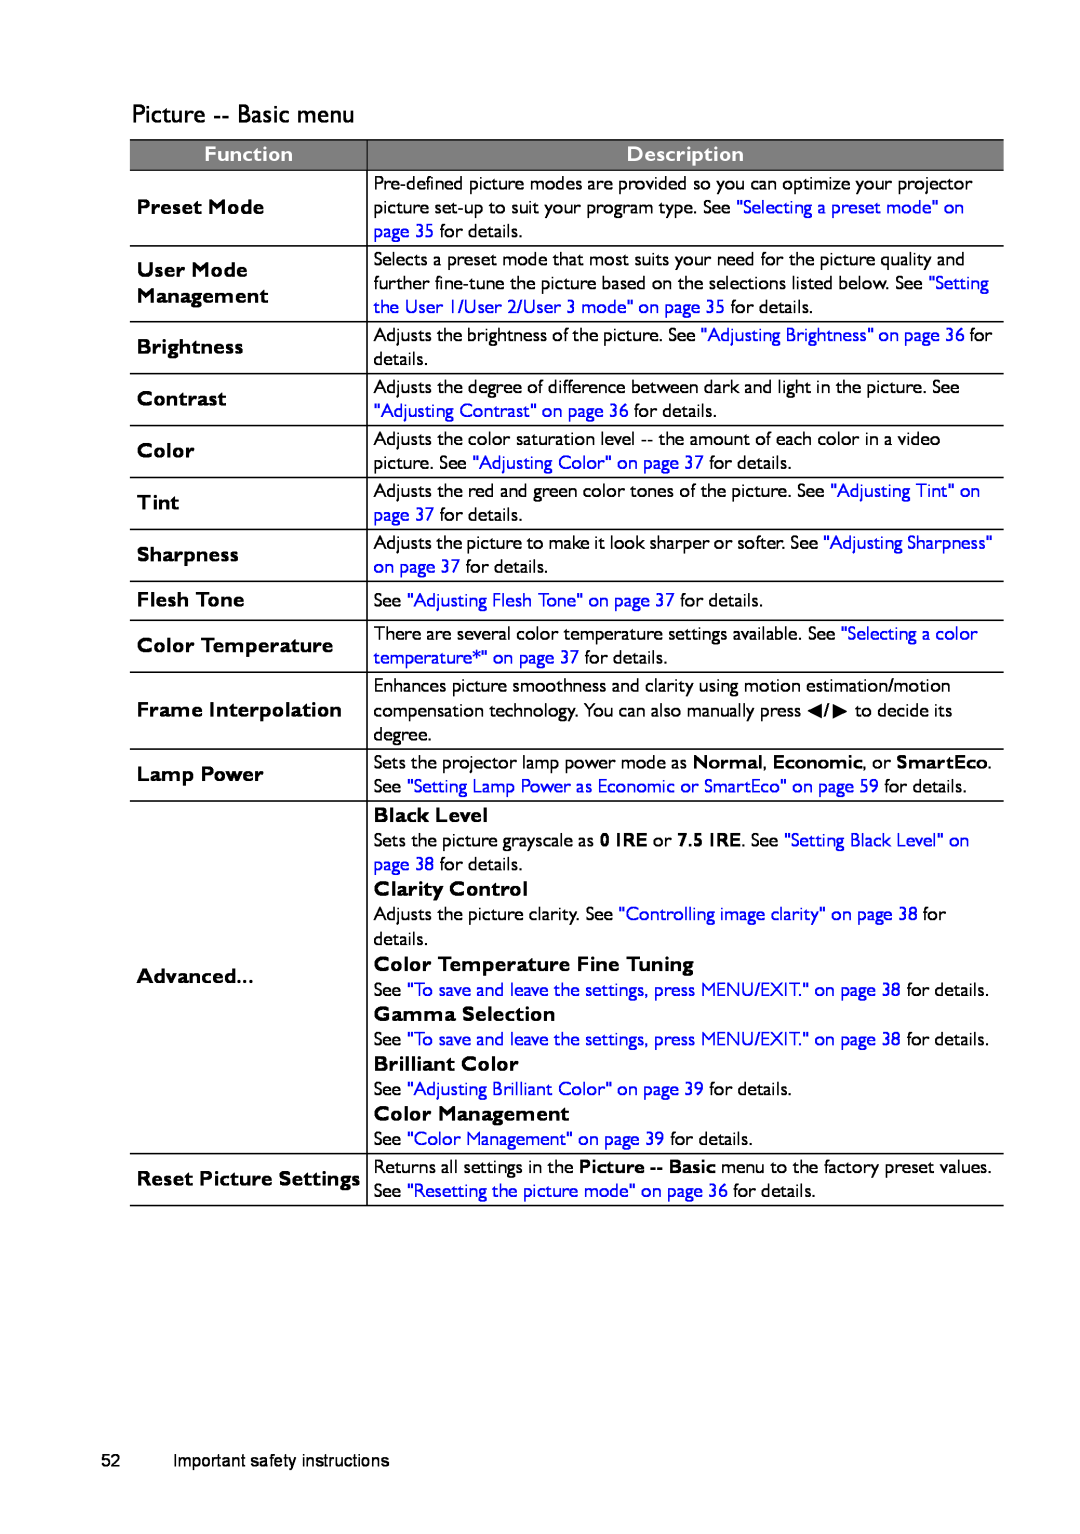 BenQ W1500 user manual Picture -- Basic menu, Function, Description 